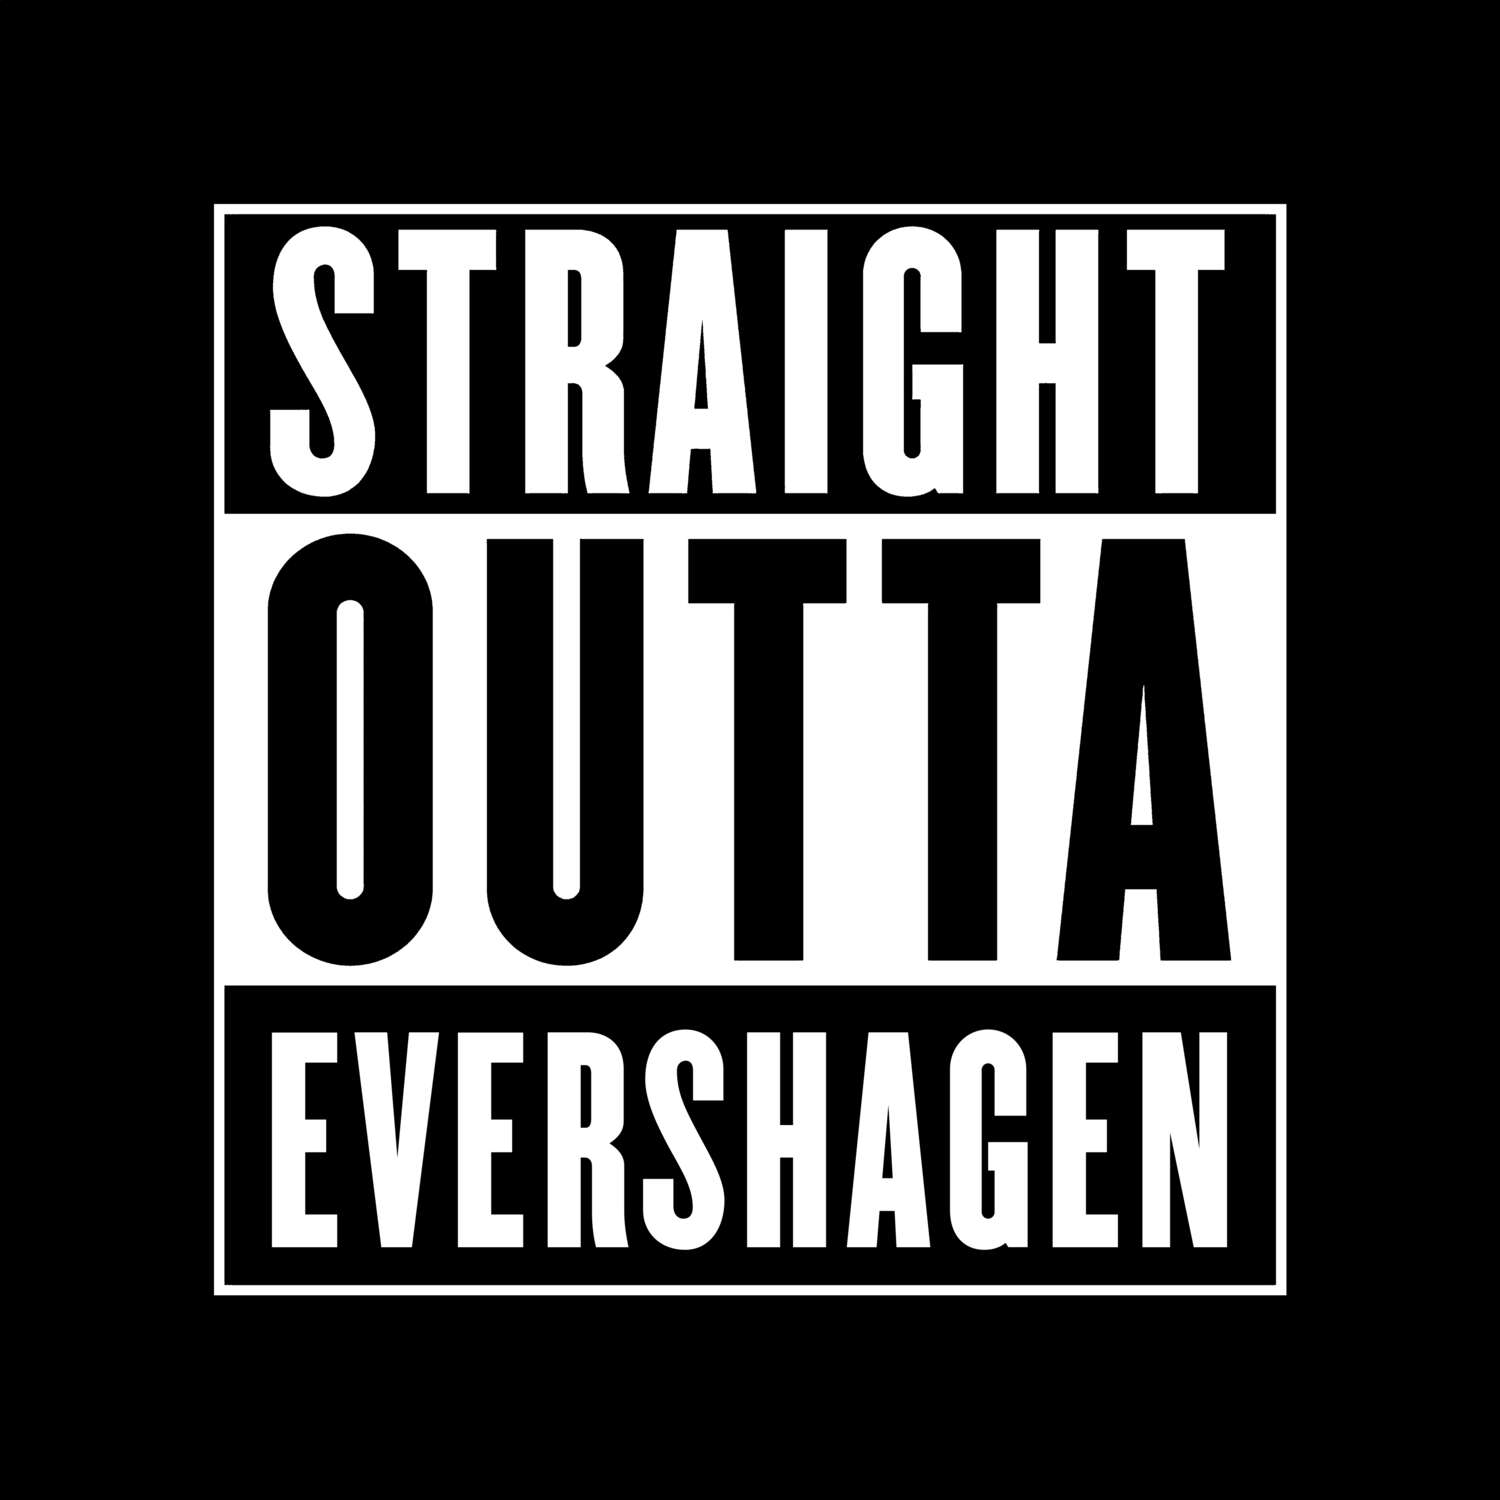 Evershagen T-Shirt »Straight Outta«